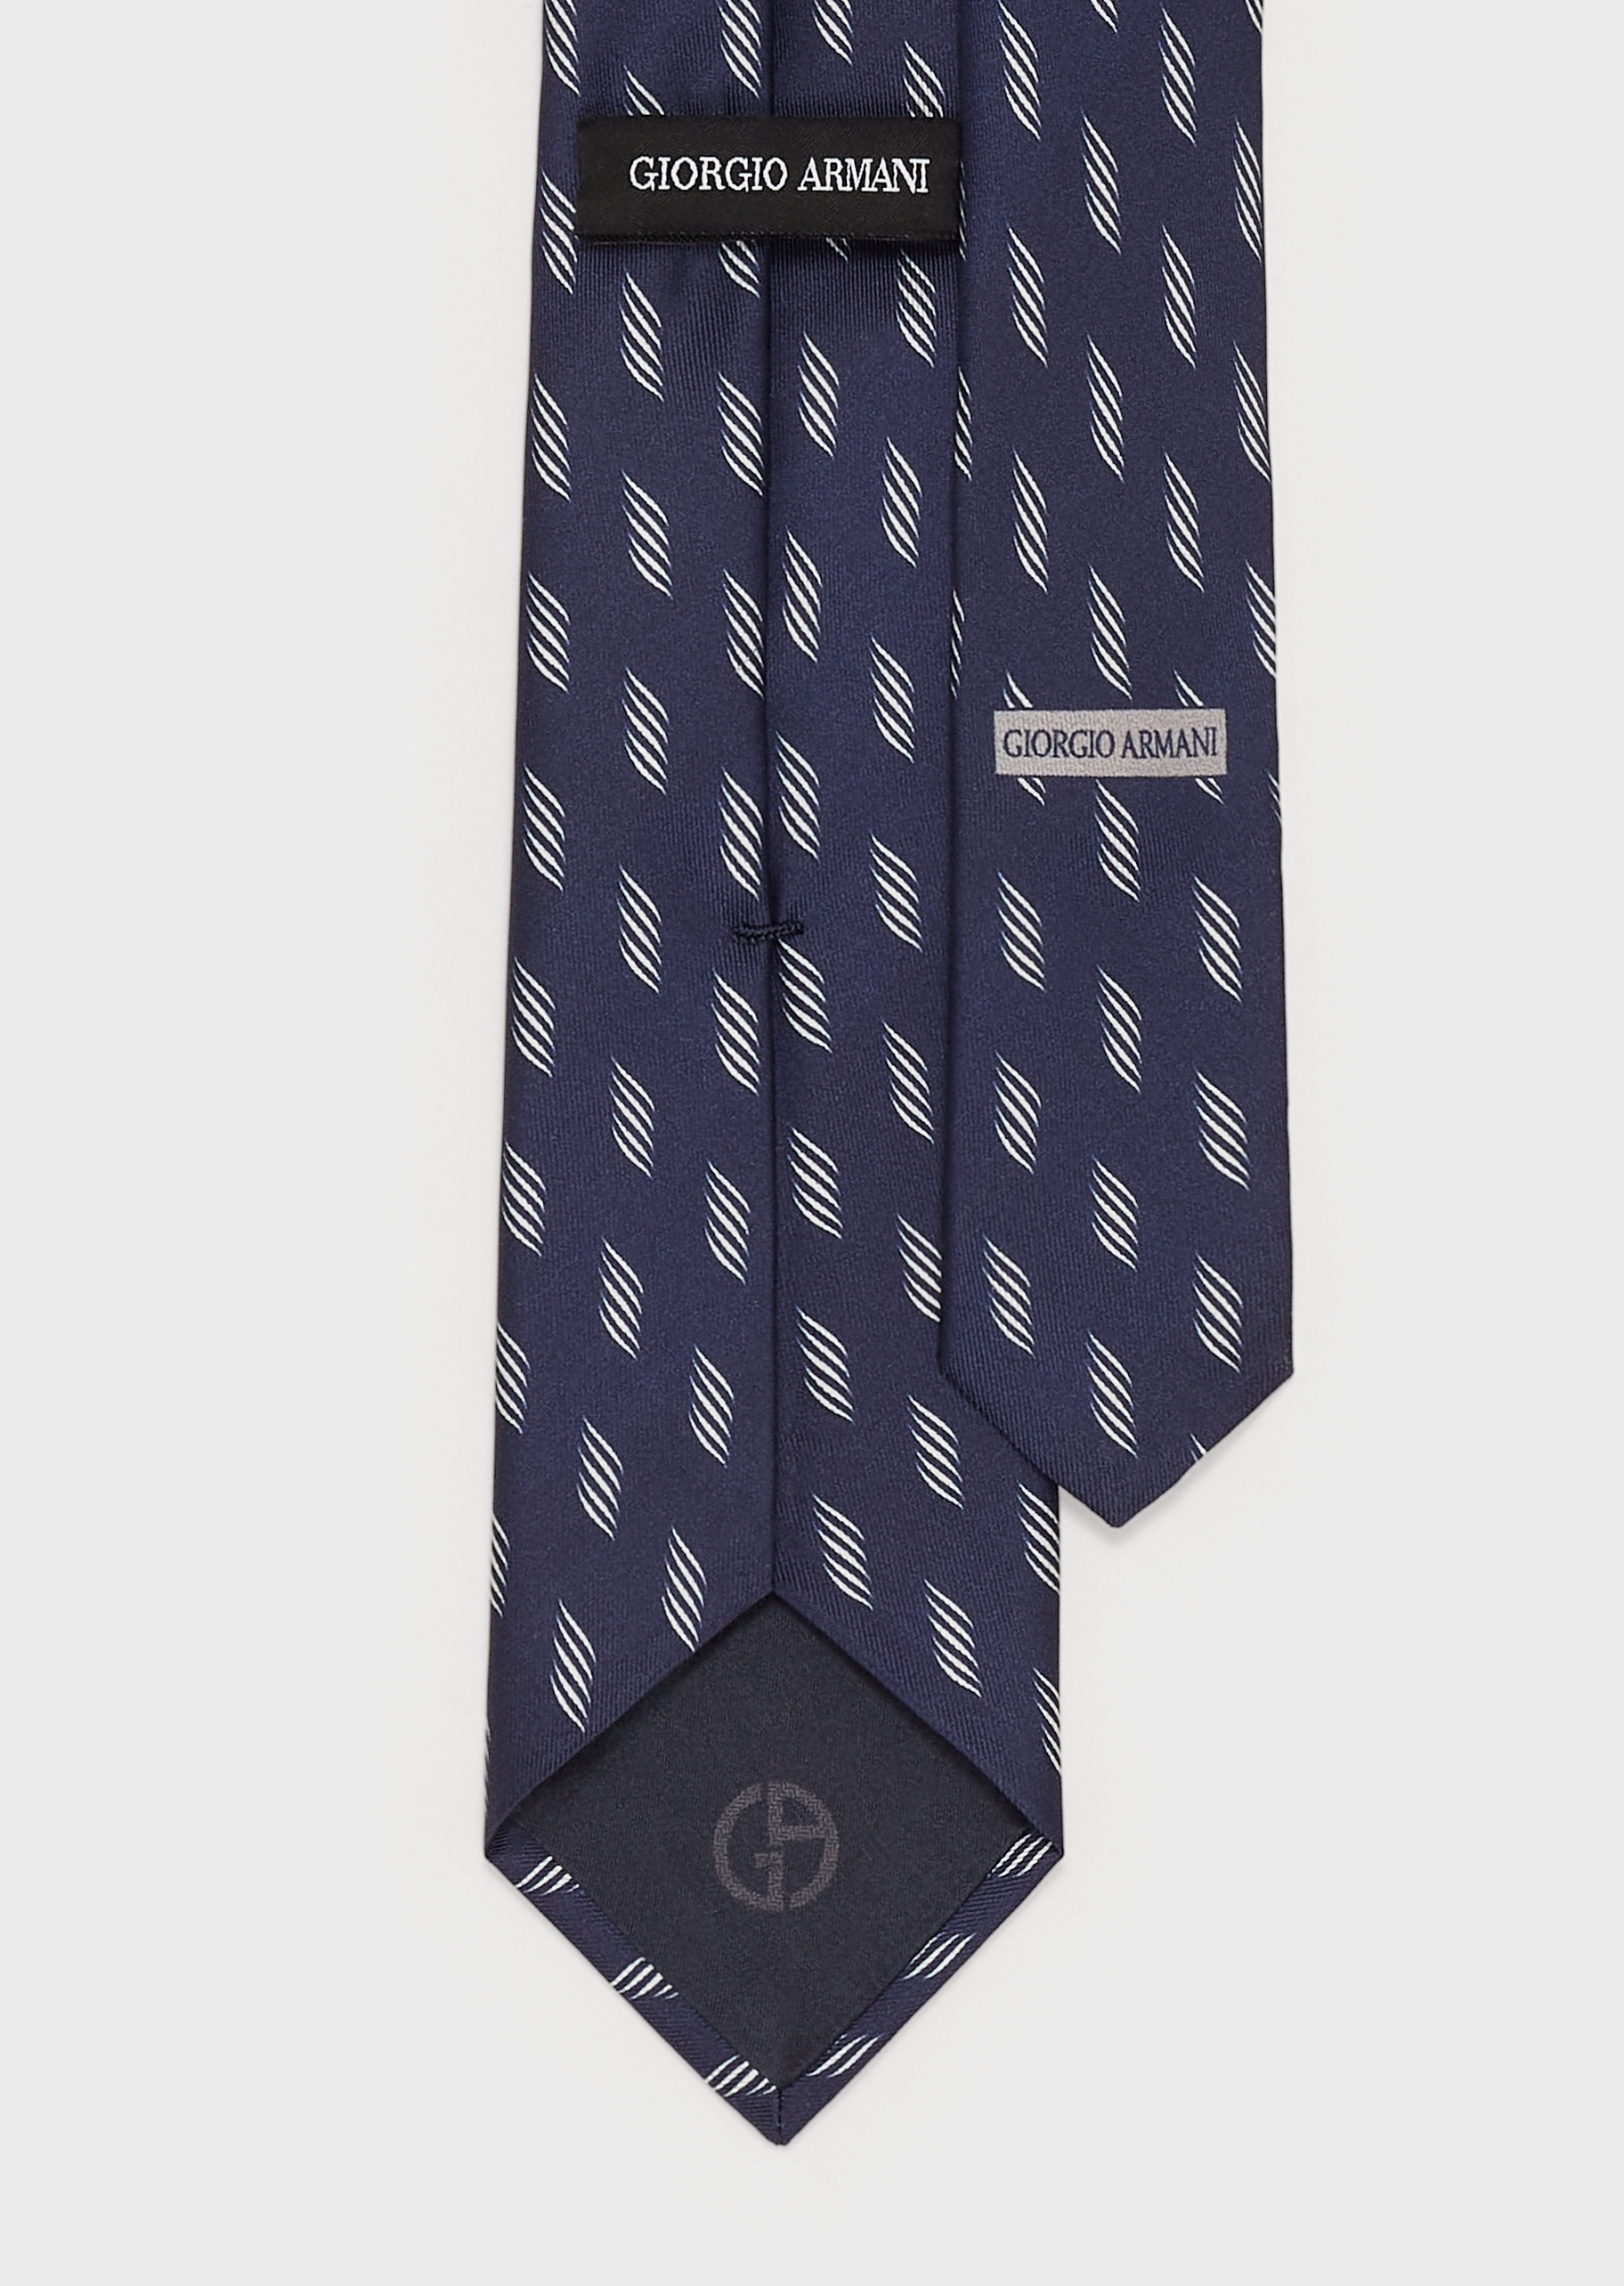 Giorgio Armani 条纹图案纯真丝领带